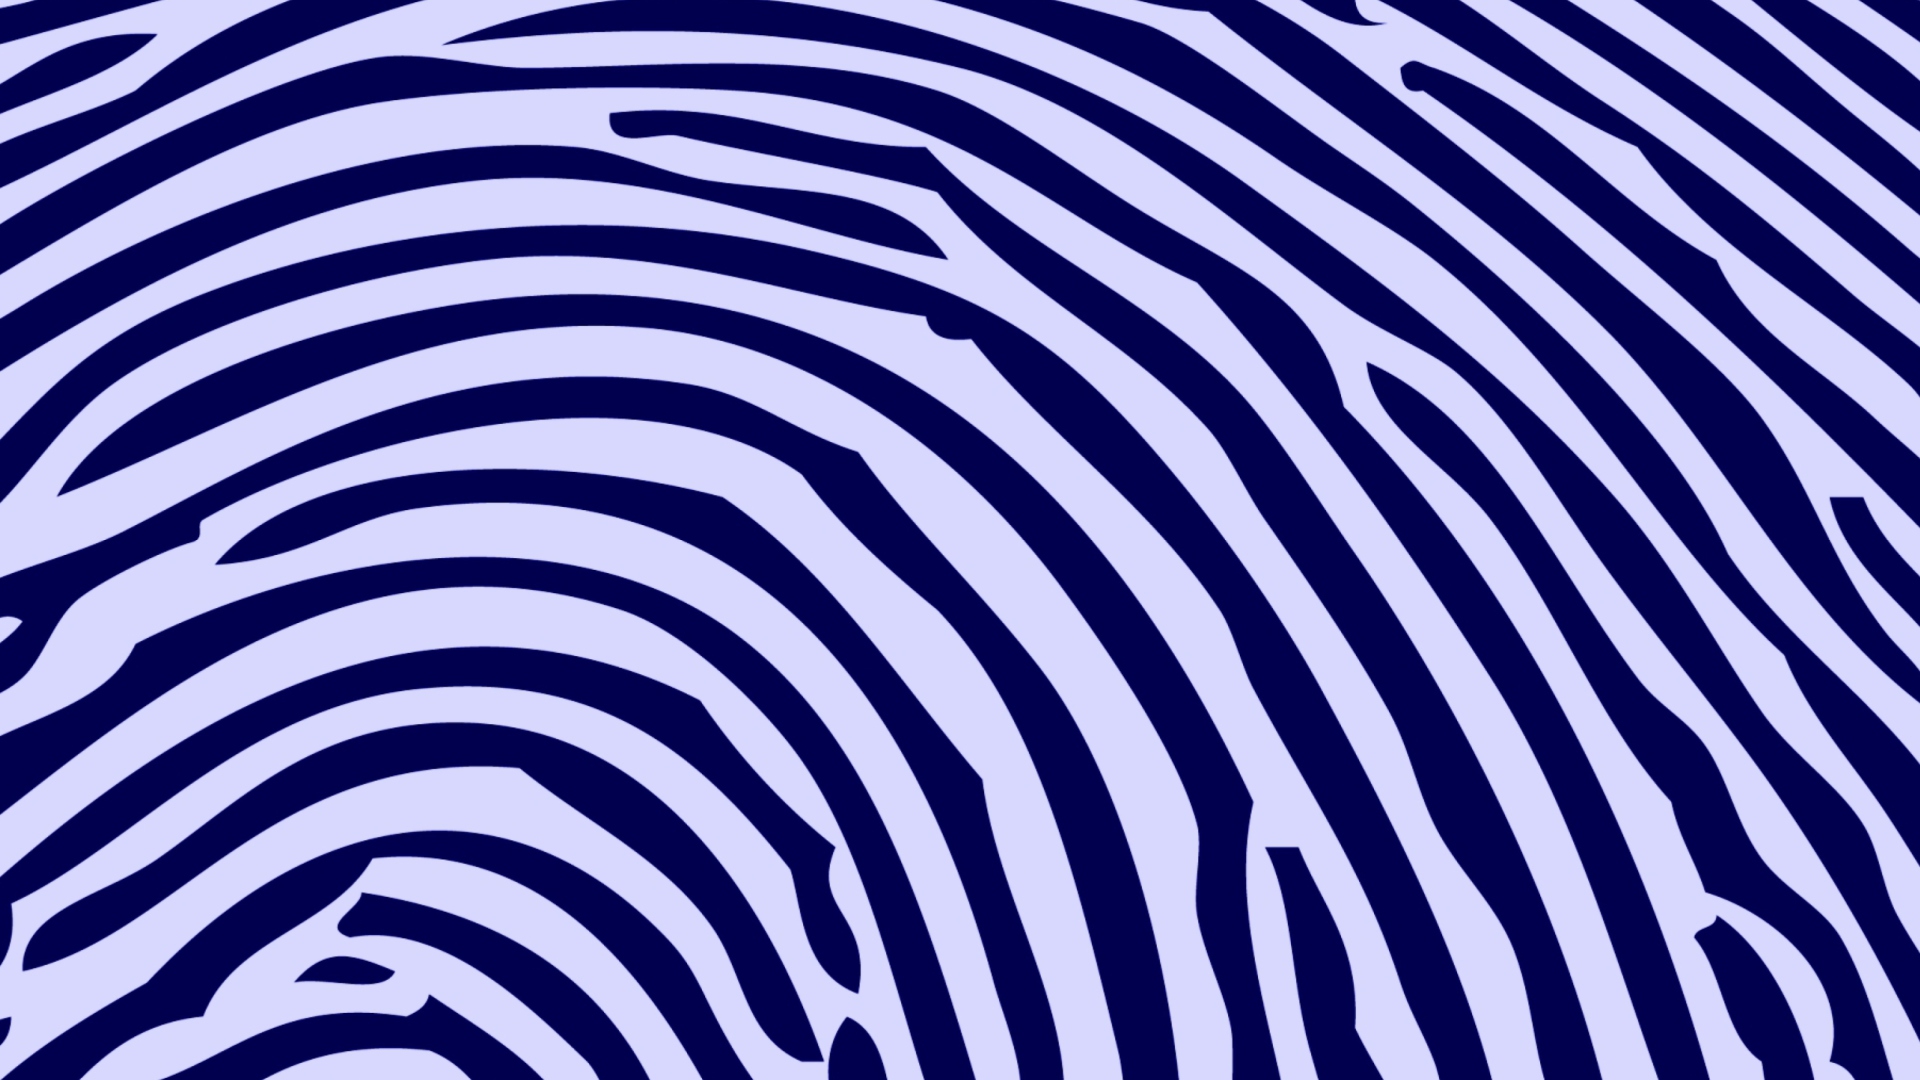 Das Zebra Pattern Wallpaper 1920x1080